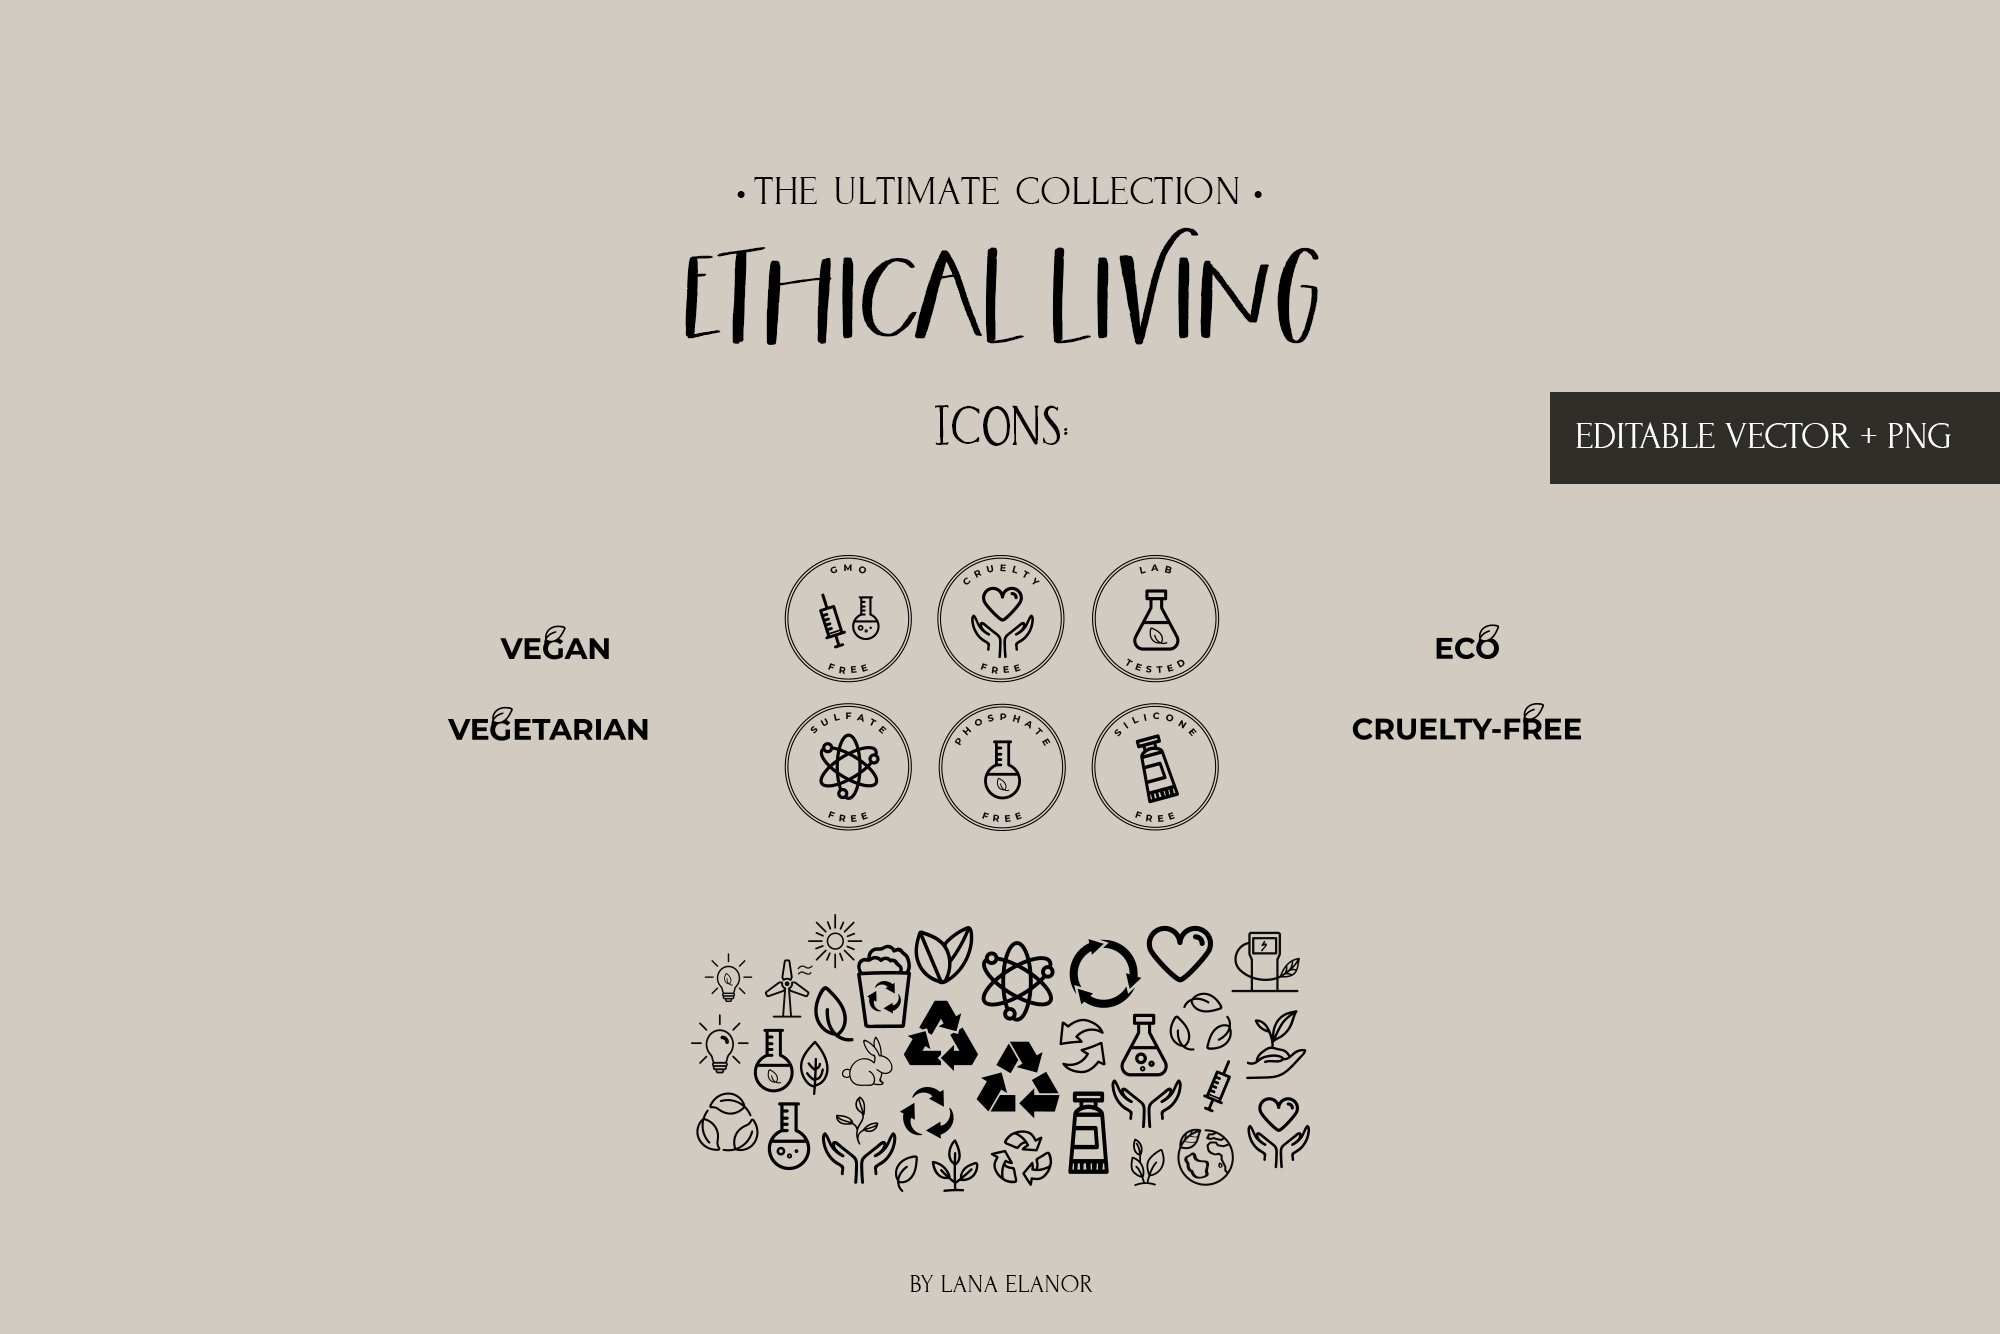 Eco & Cruelty-free icons.